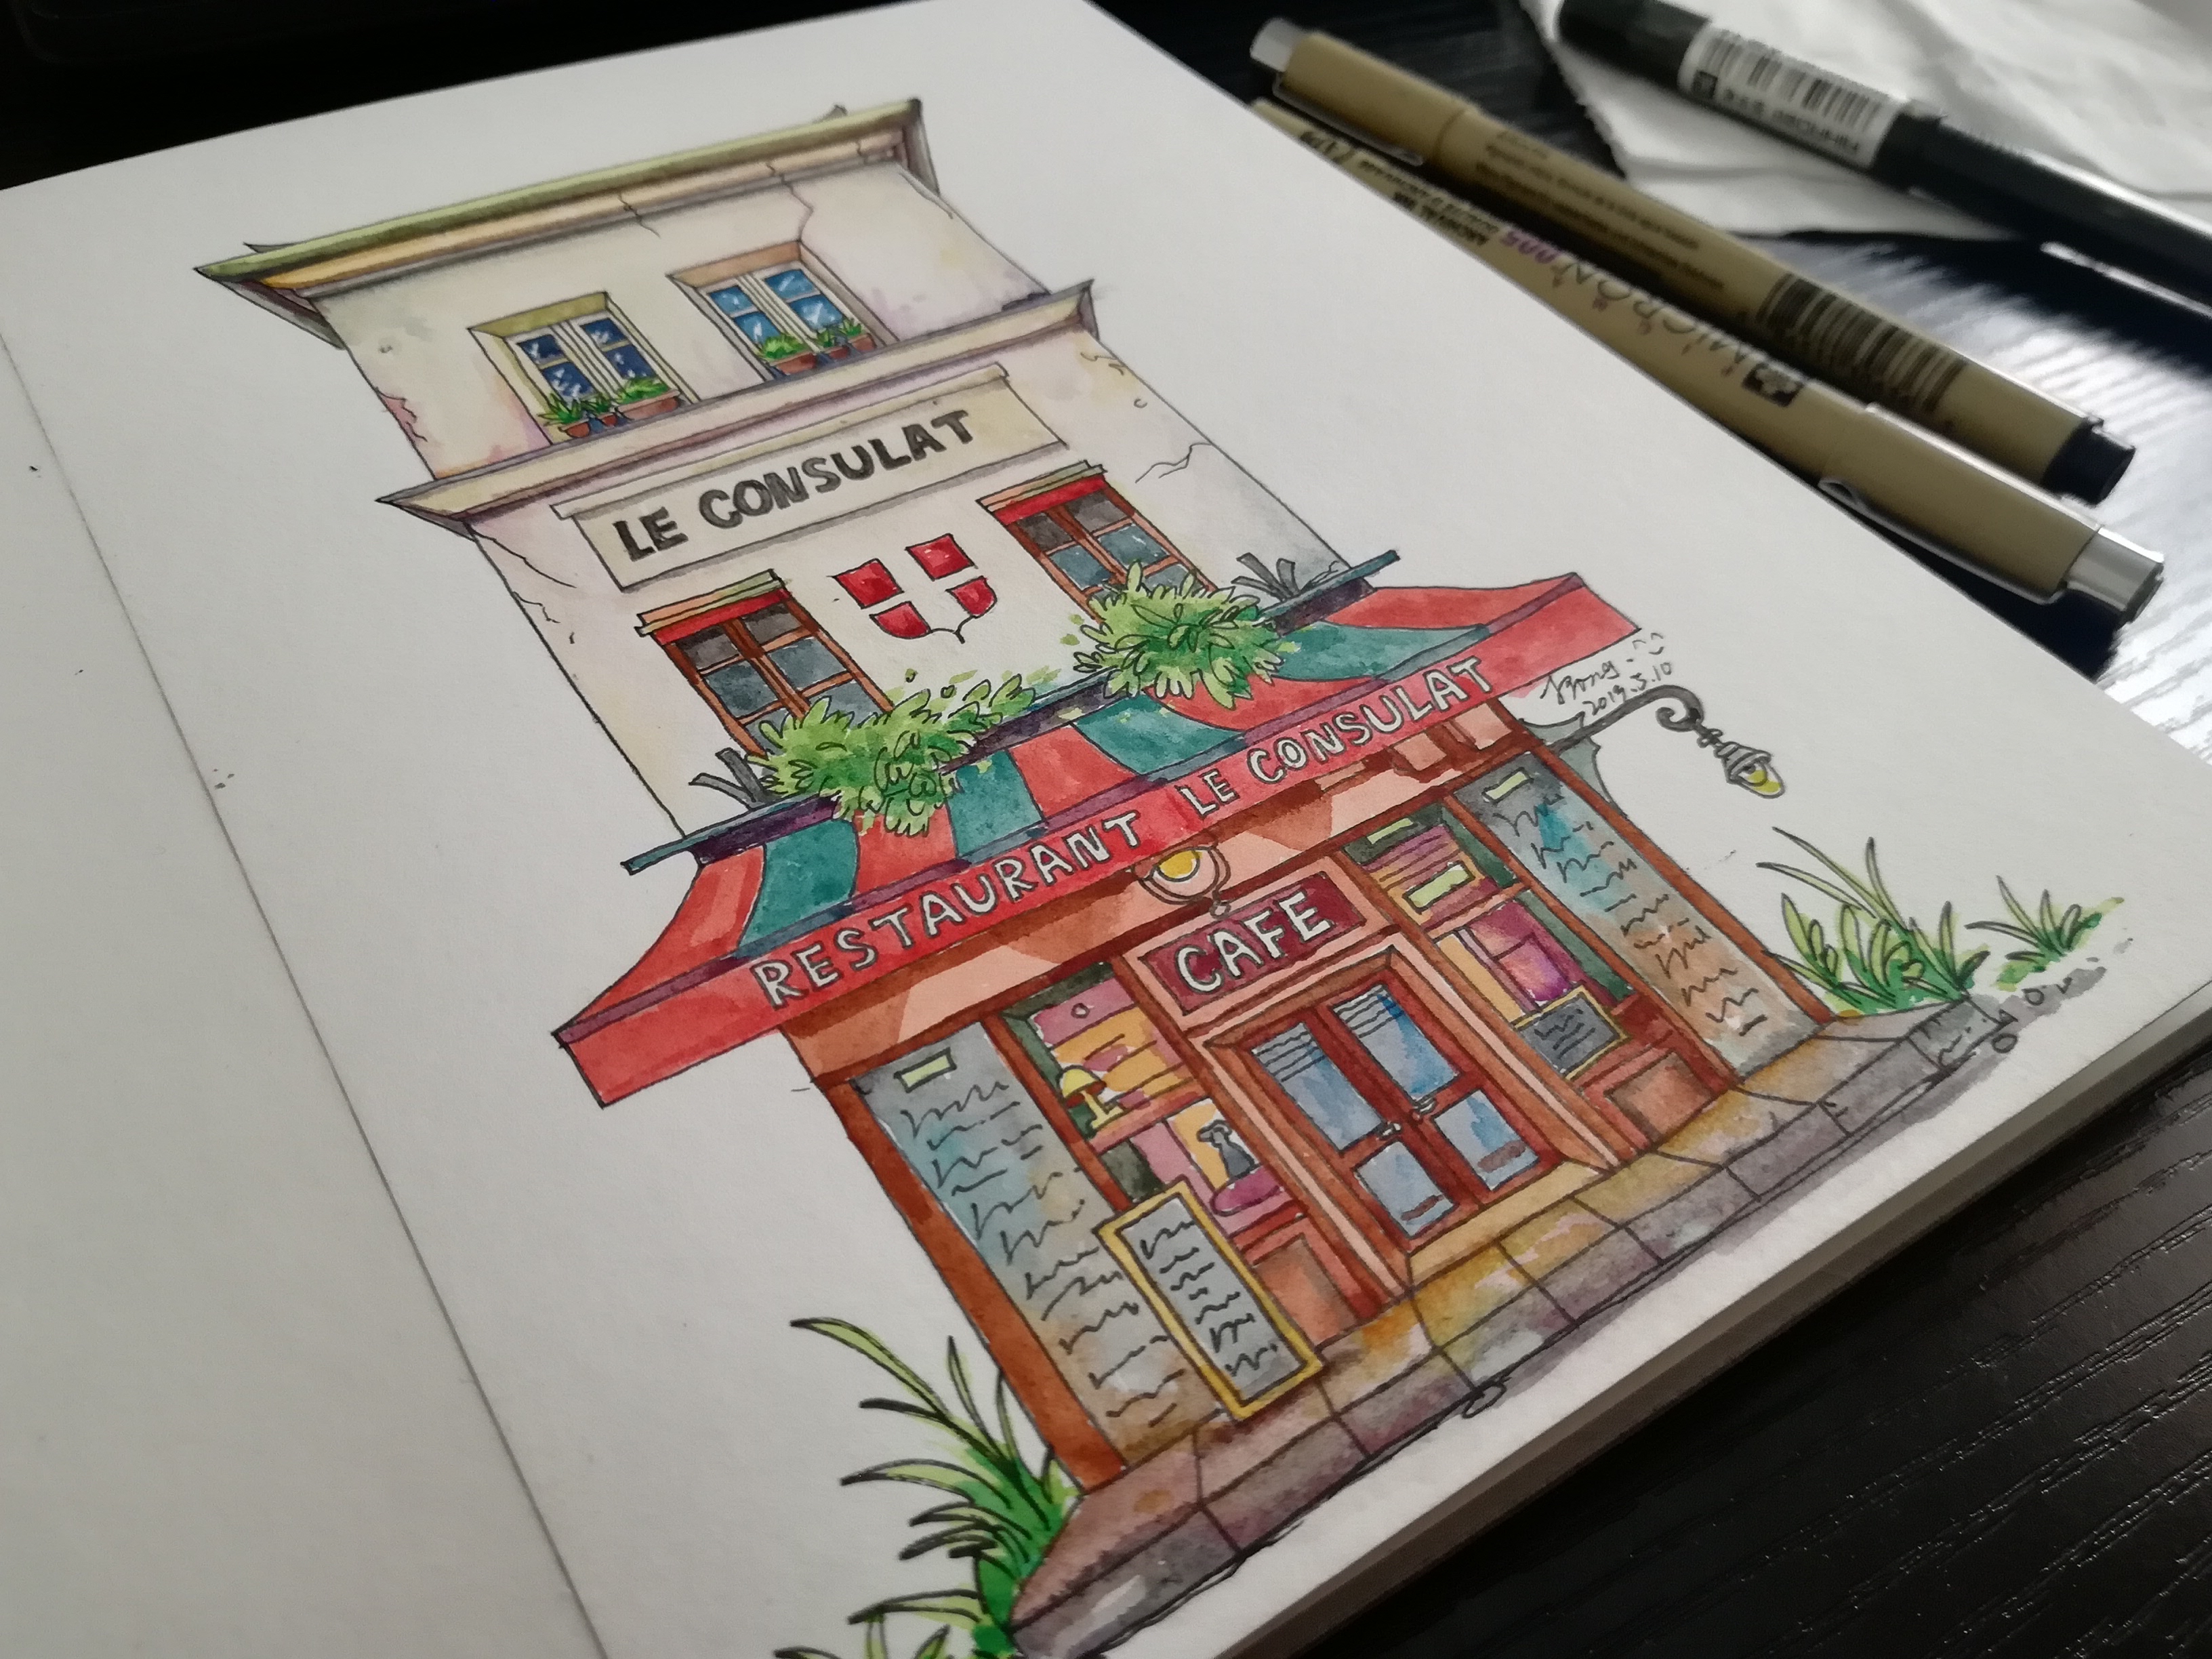 水彩画房子简单图片